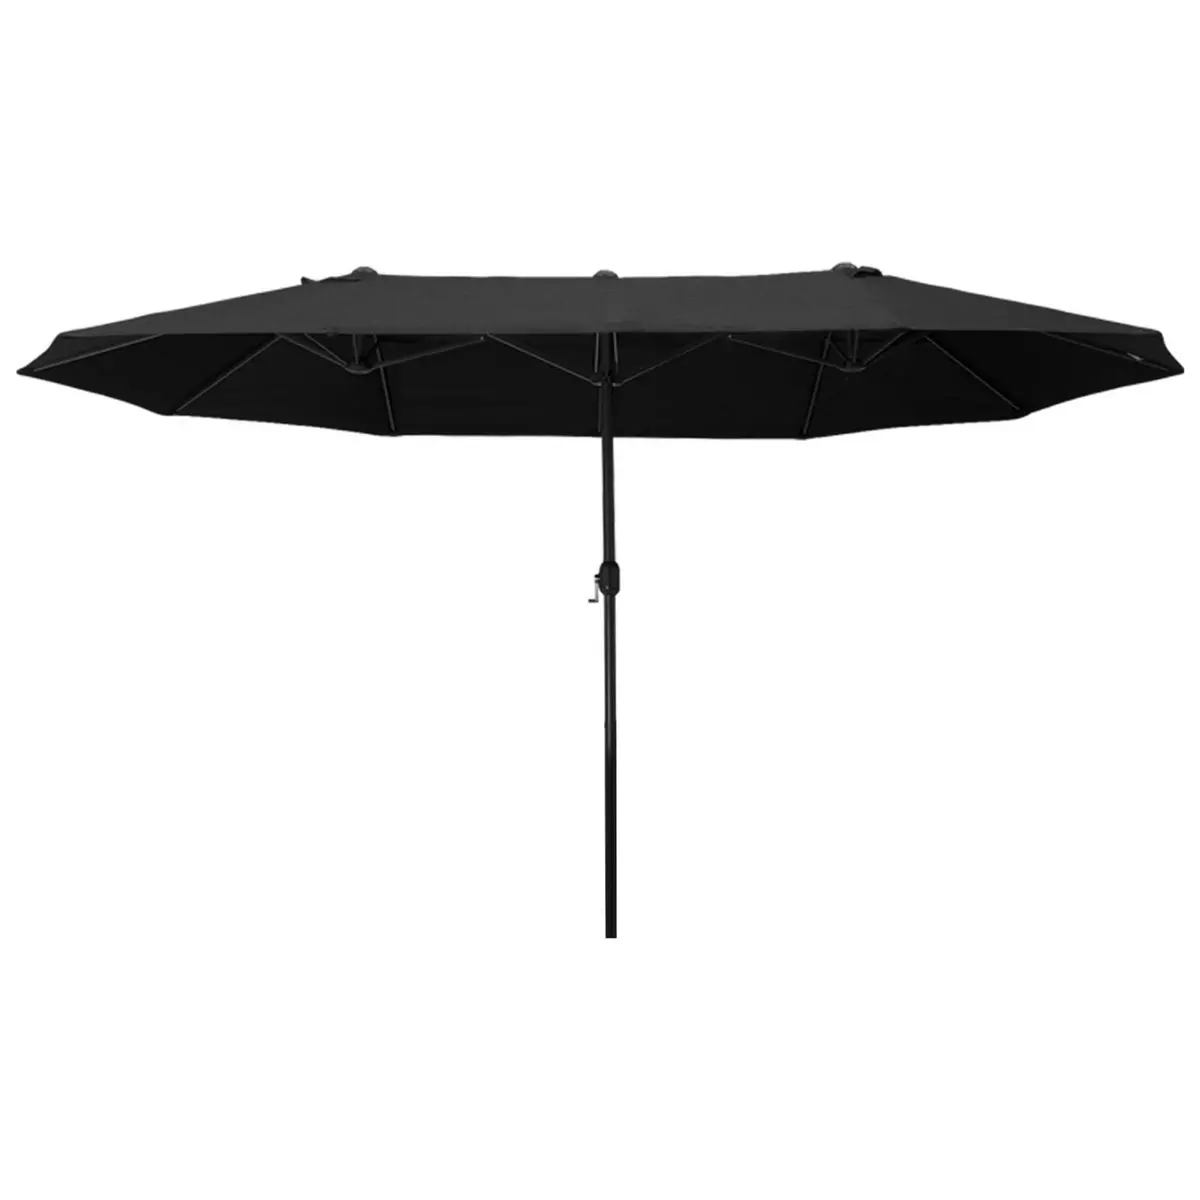 OUTSUNNY Parasol de jardin XXL parasol grande taille 4,6L x 2,7l x 2,4H m ouverture fermeture manivelle acier polyester haute densité noir